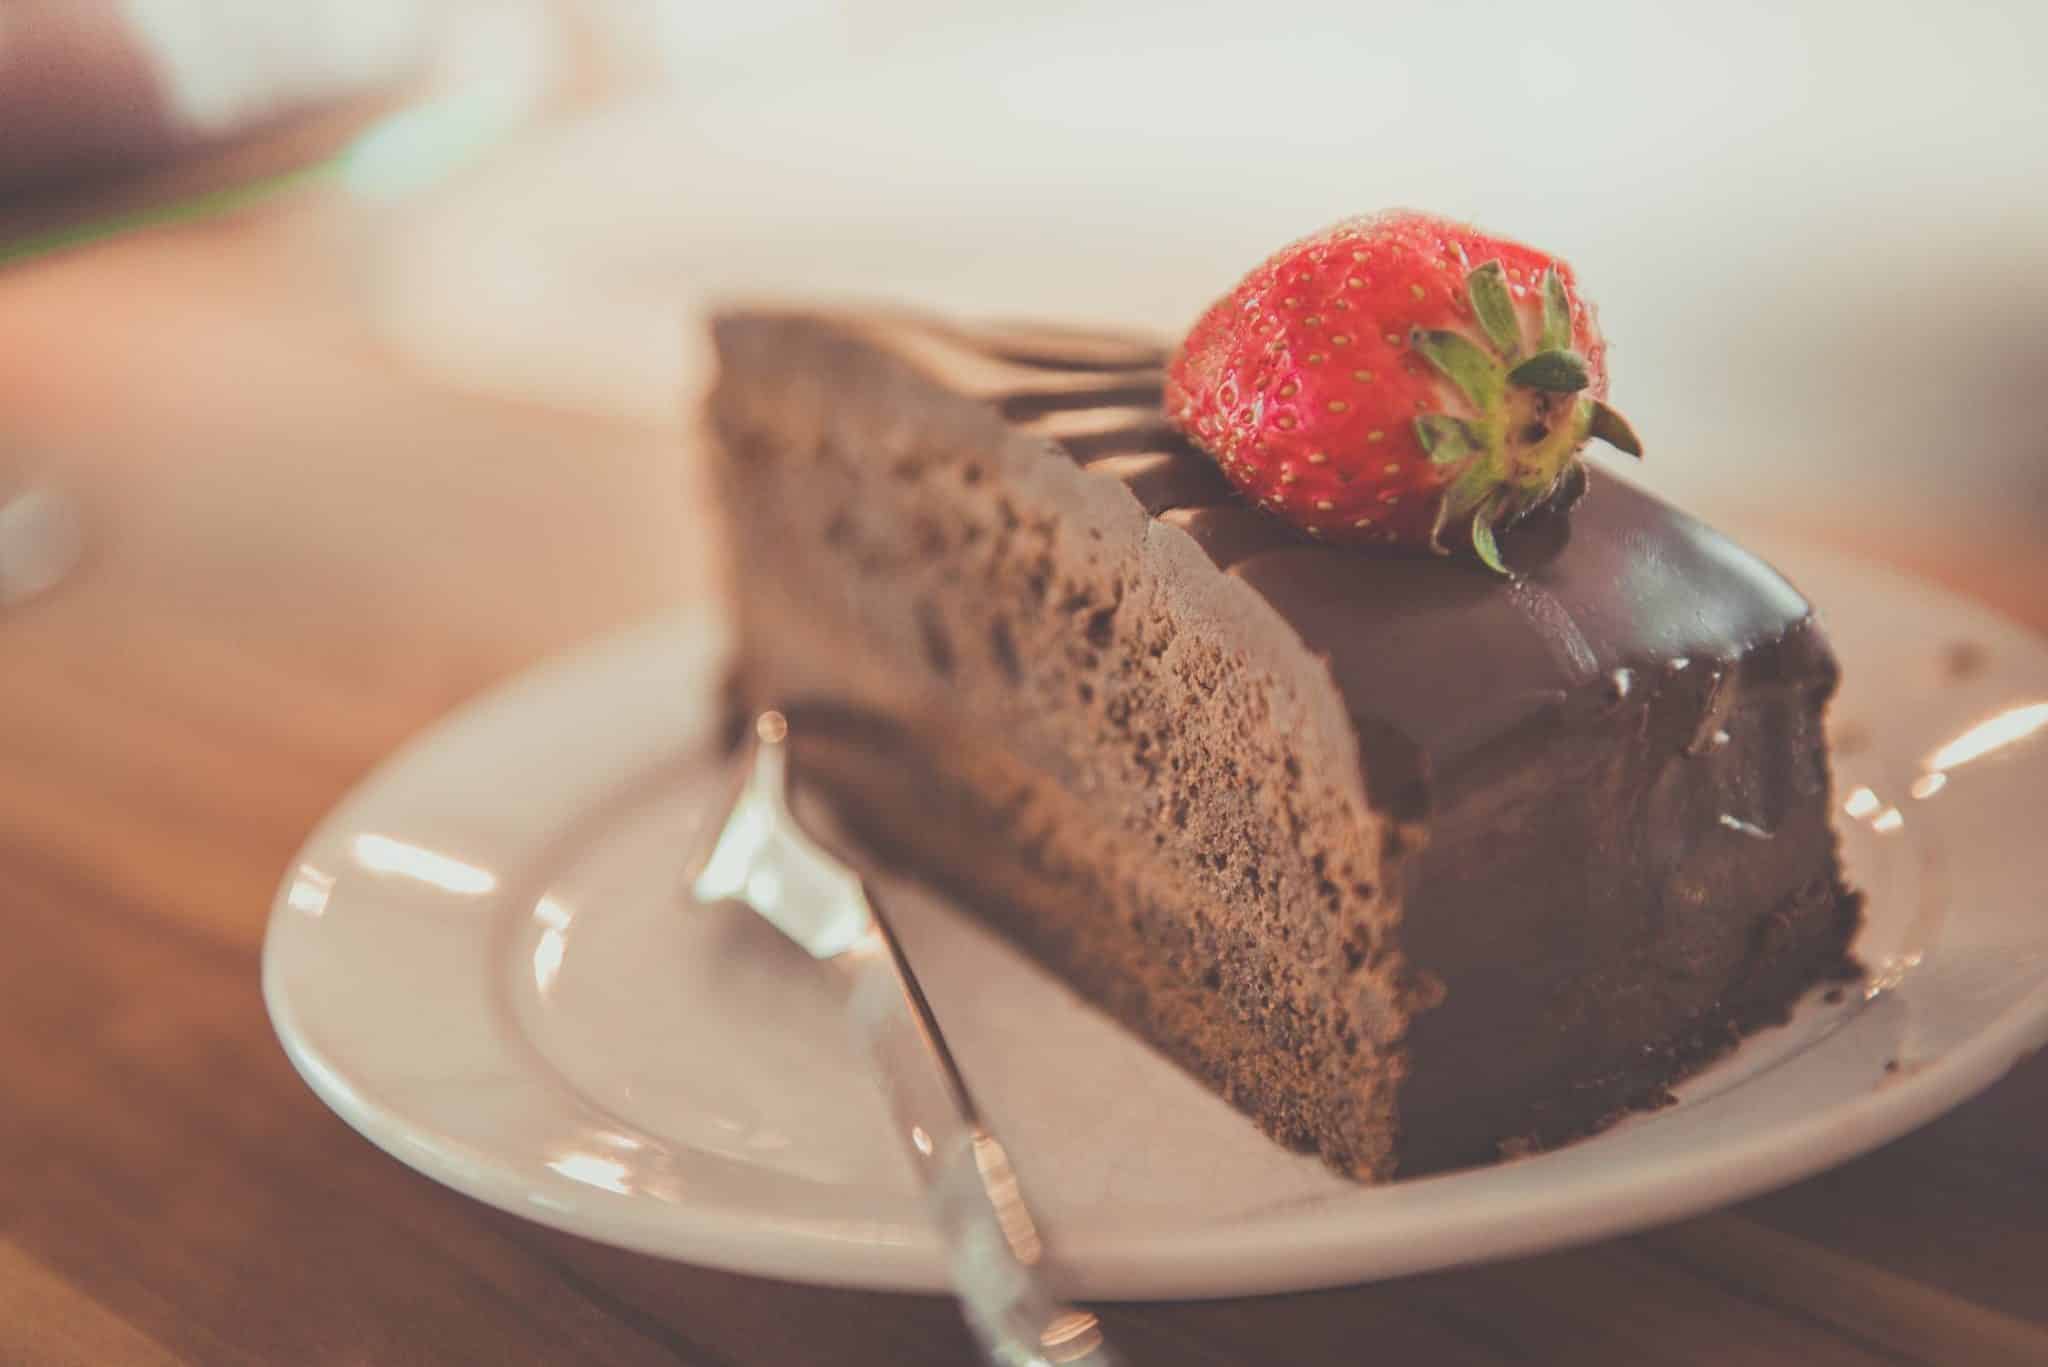 בוחרים מתכון מבין האפשרויות הבאות של עוגות שוקולד משובחות